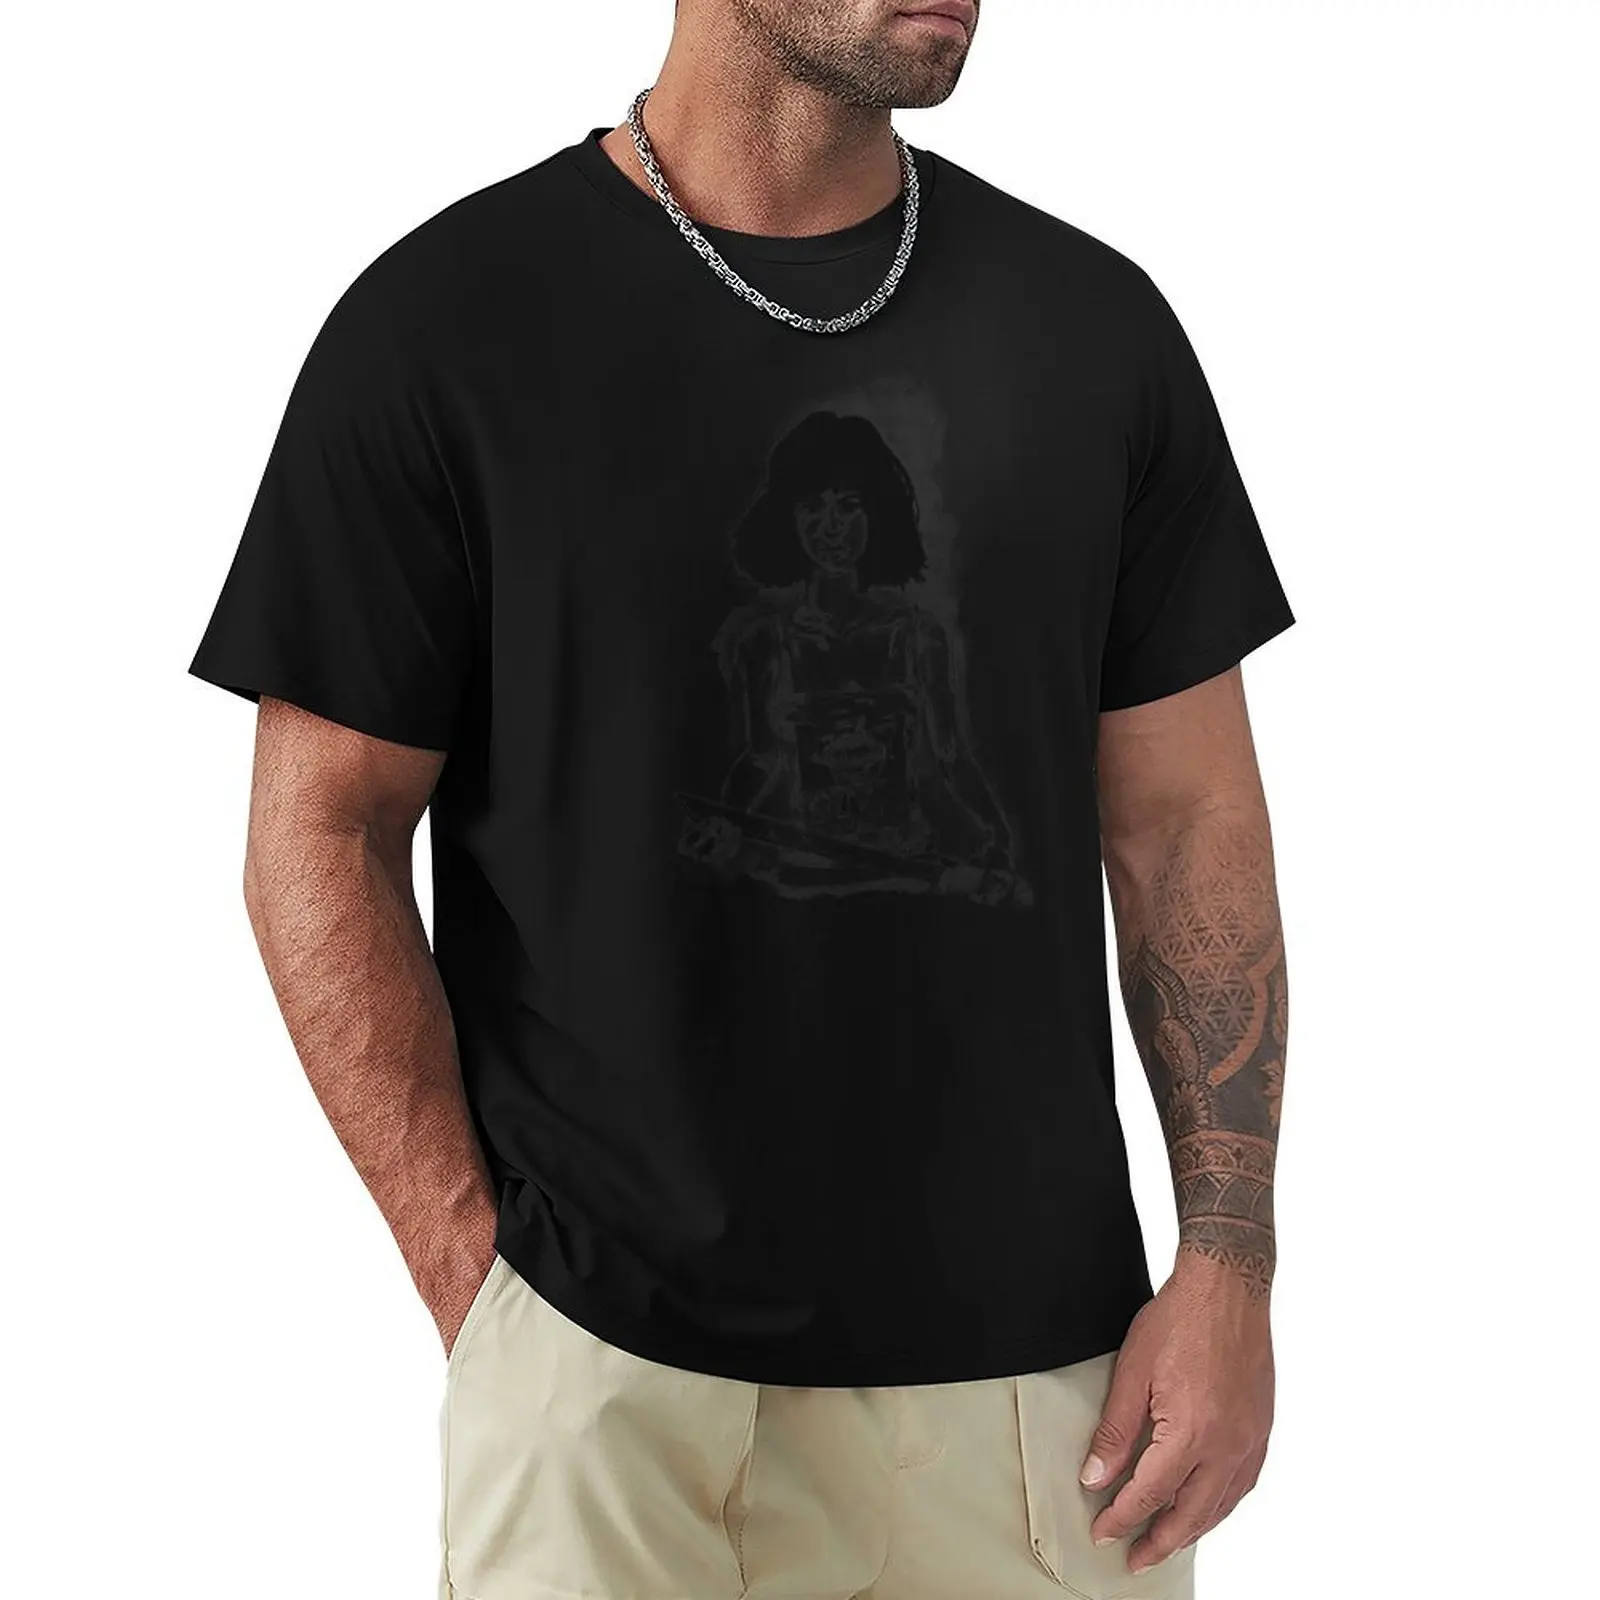 

Мужская футболка с принтом животных FA-TAL, футболка с графическим принтом в стиле хип-хоп